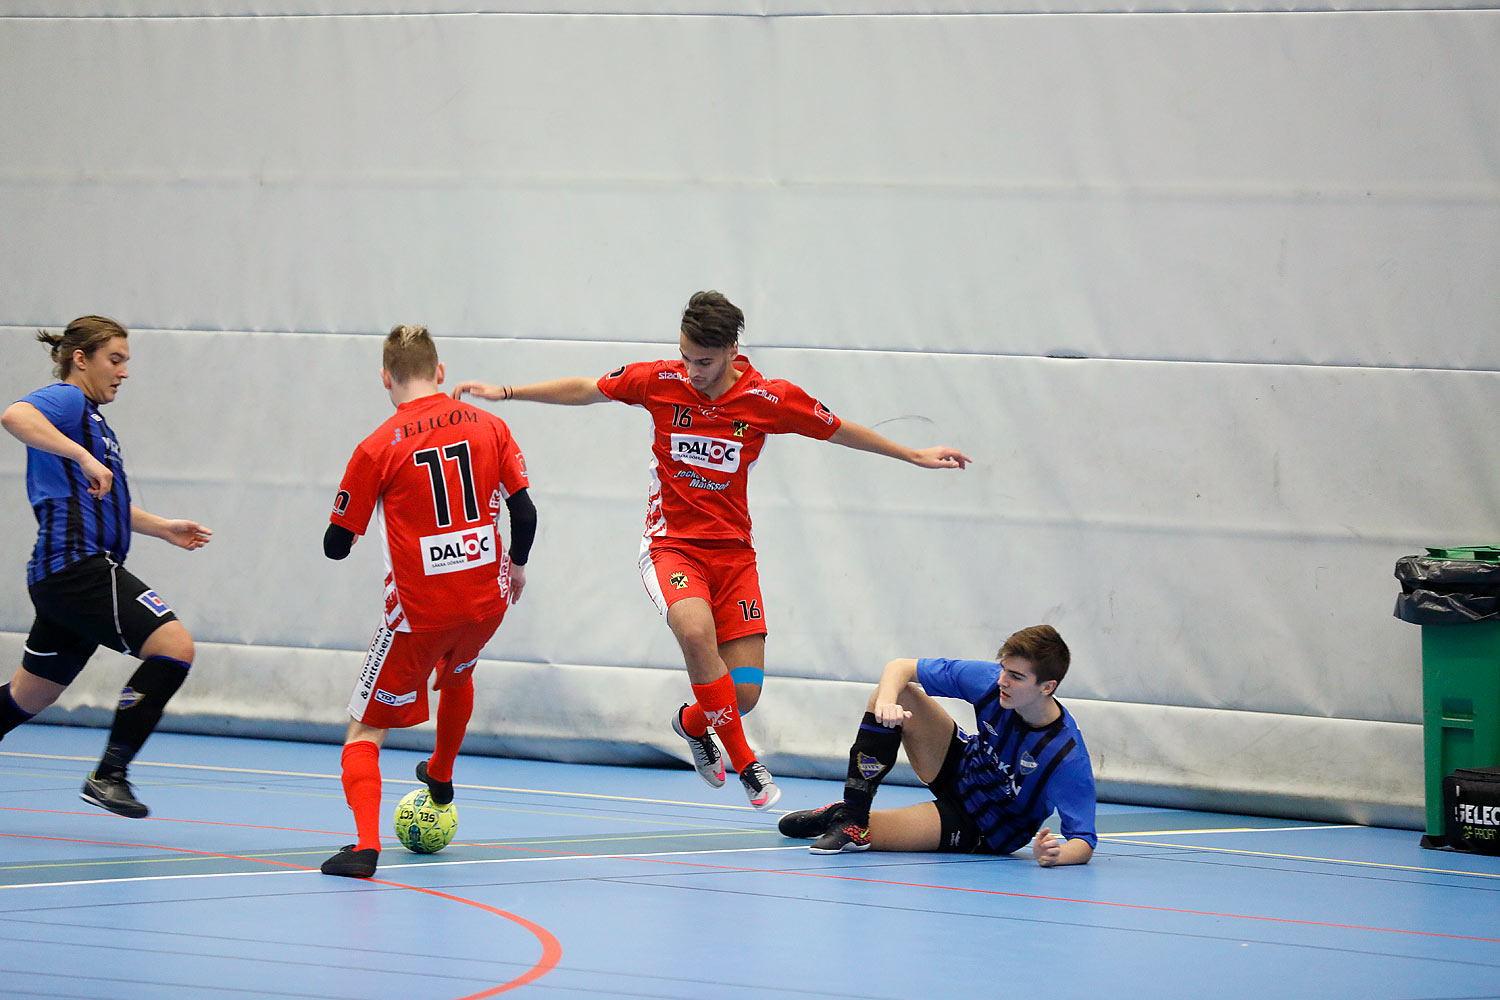 Skövde Futsalcup Herrjuniorer Ulricehamns IFK-Töreboda IK,herr,Arena Skövde,Skövde,Sverige,Skövde Futsalcup 2016,Futsal,2016,141949